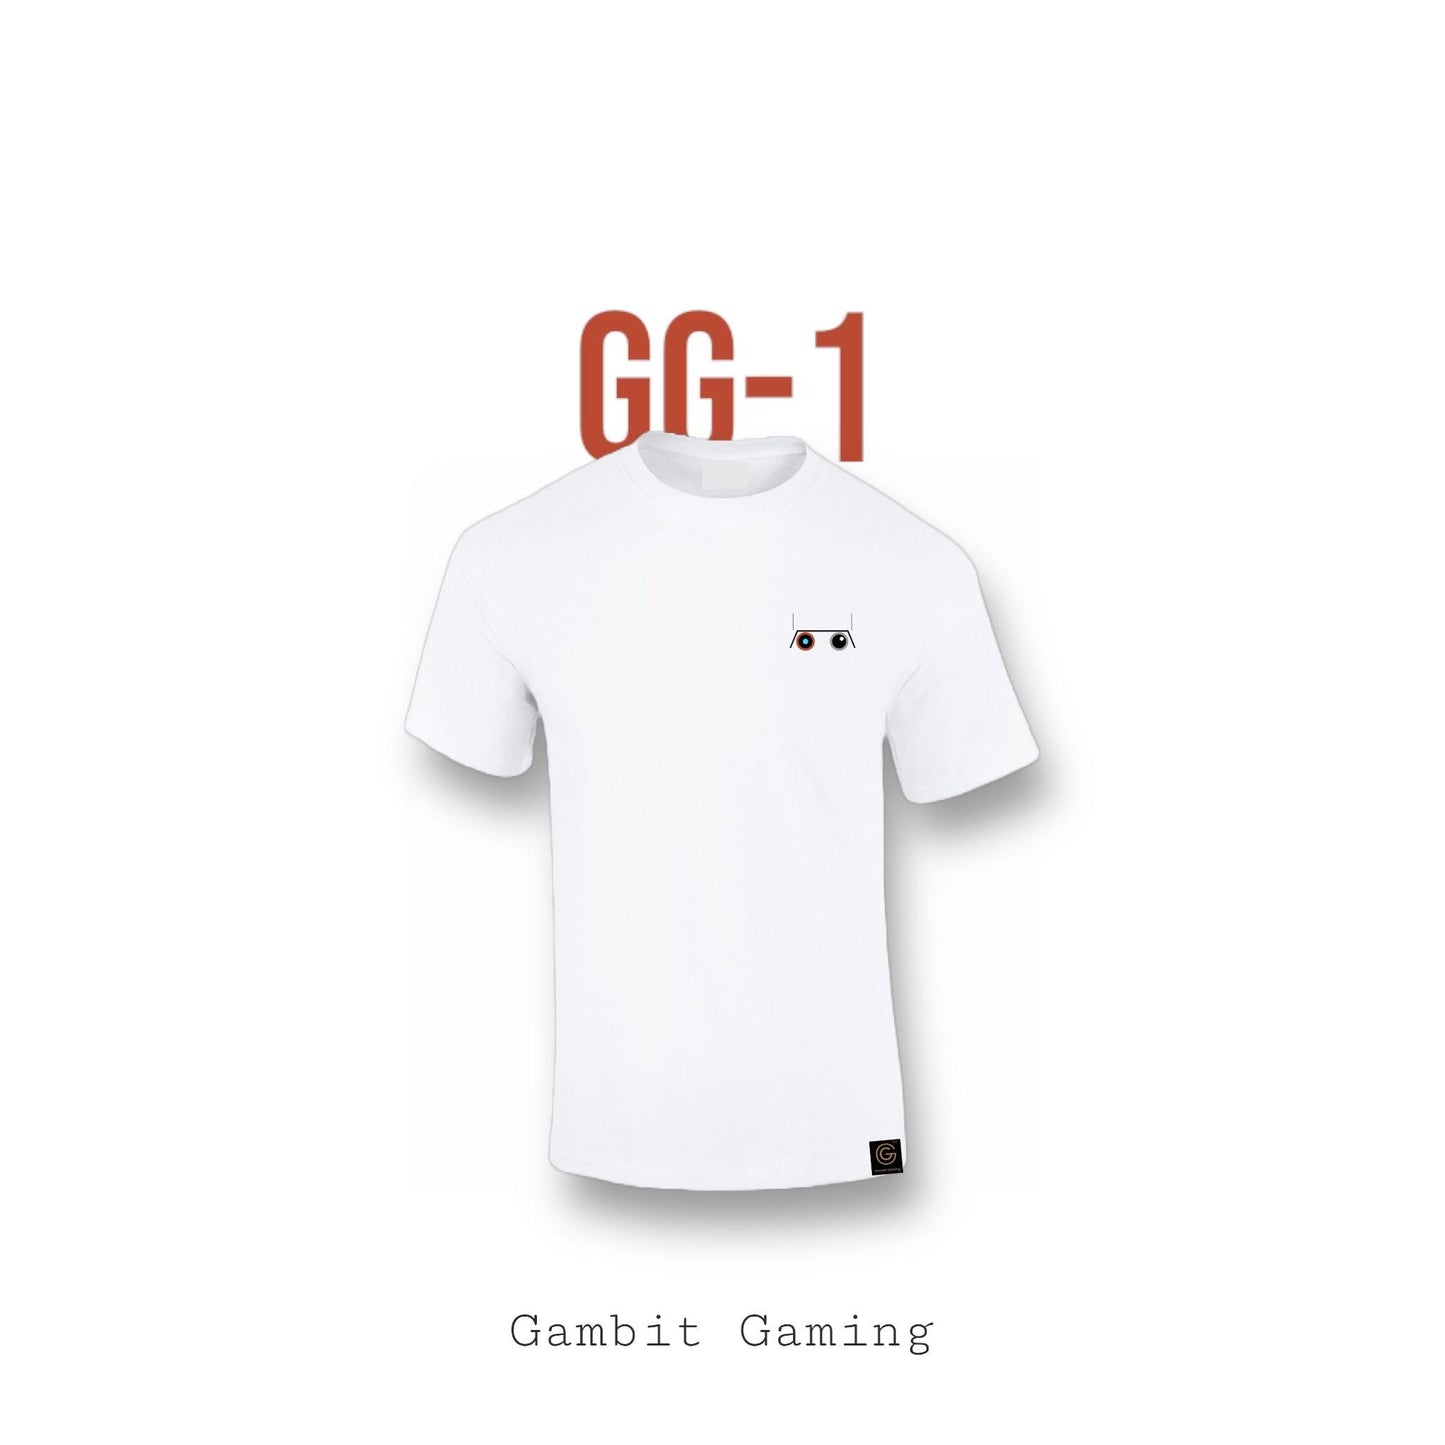 GG-1 - Gambit Gaming